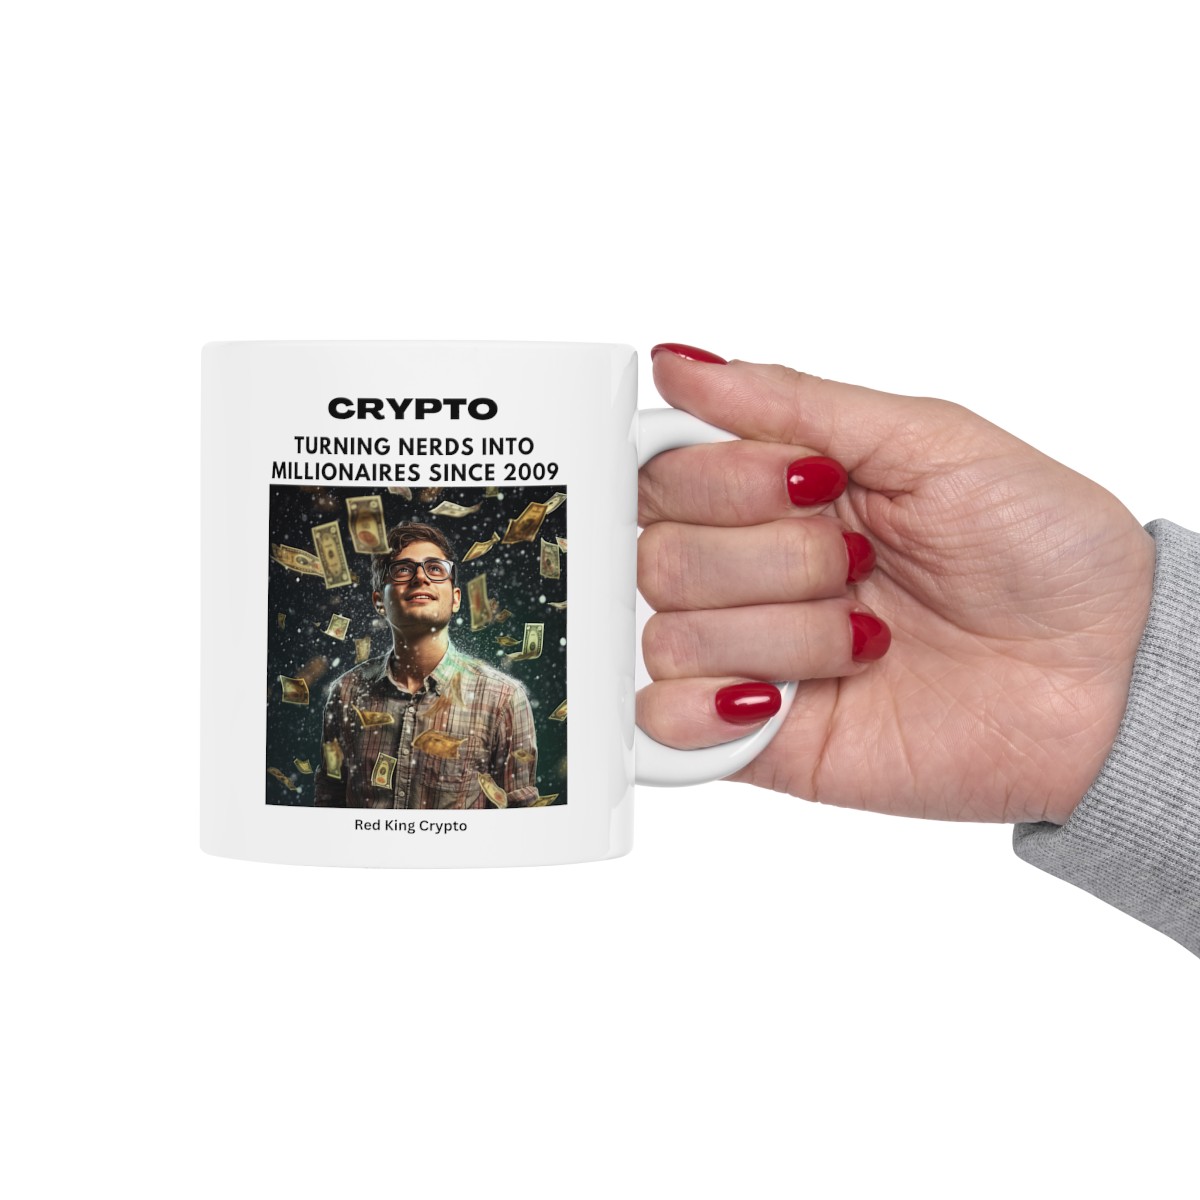 Crypto turning Nerds into Millionaires - Ceramic Mug 11oz product thumbnail image